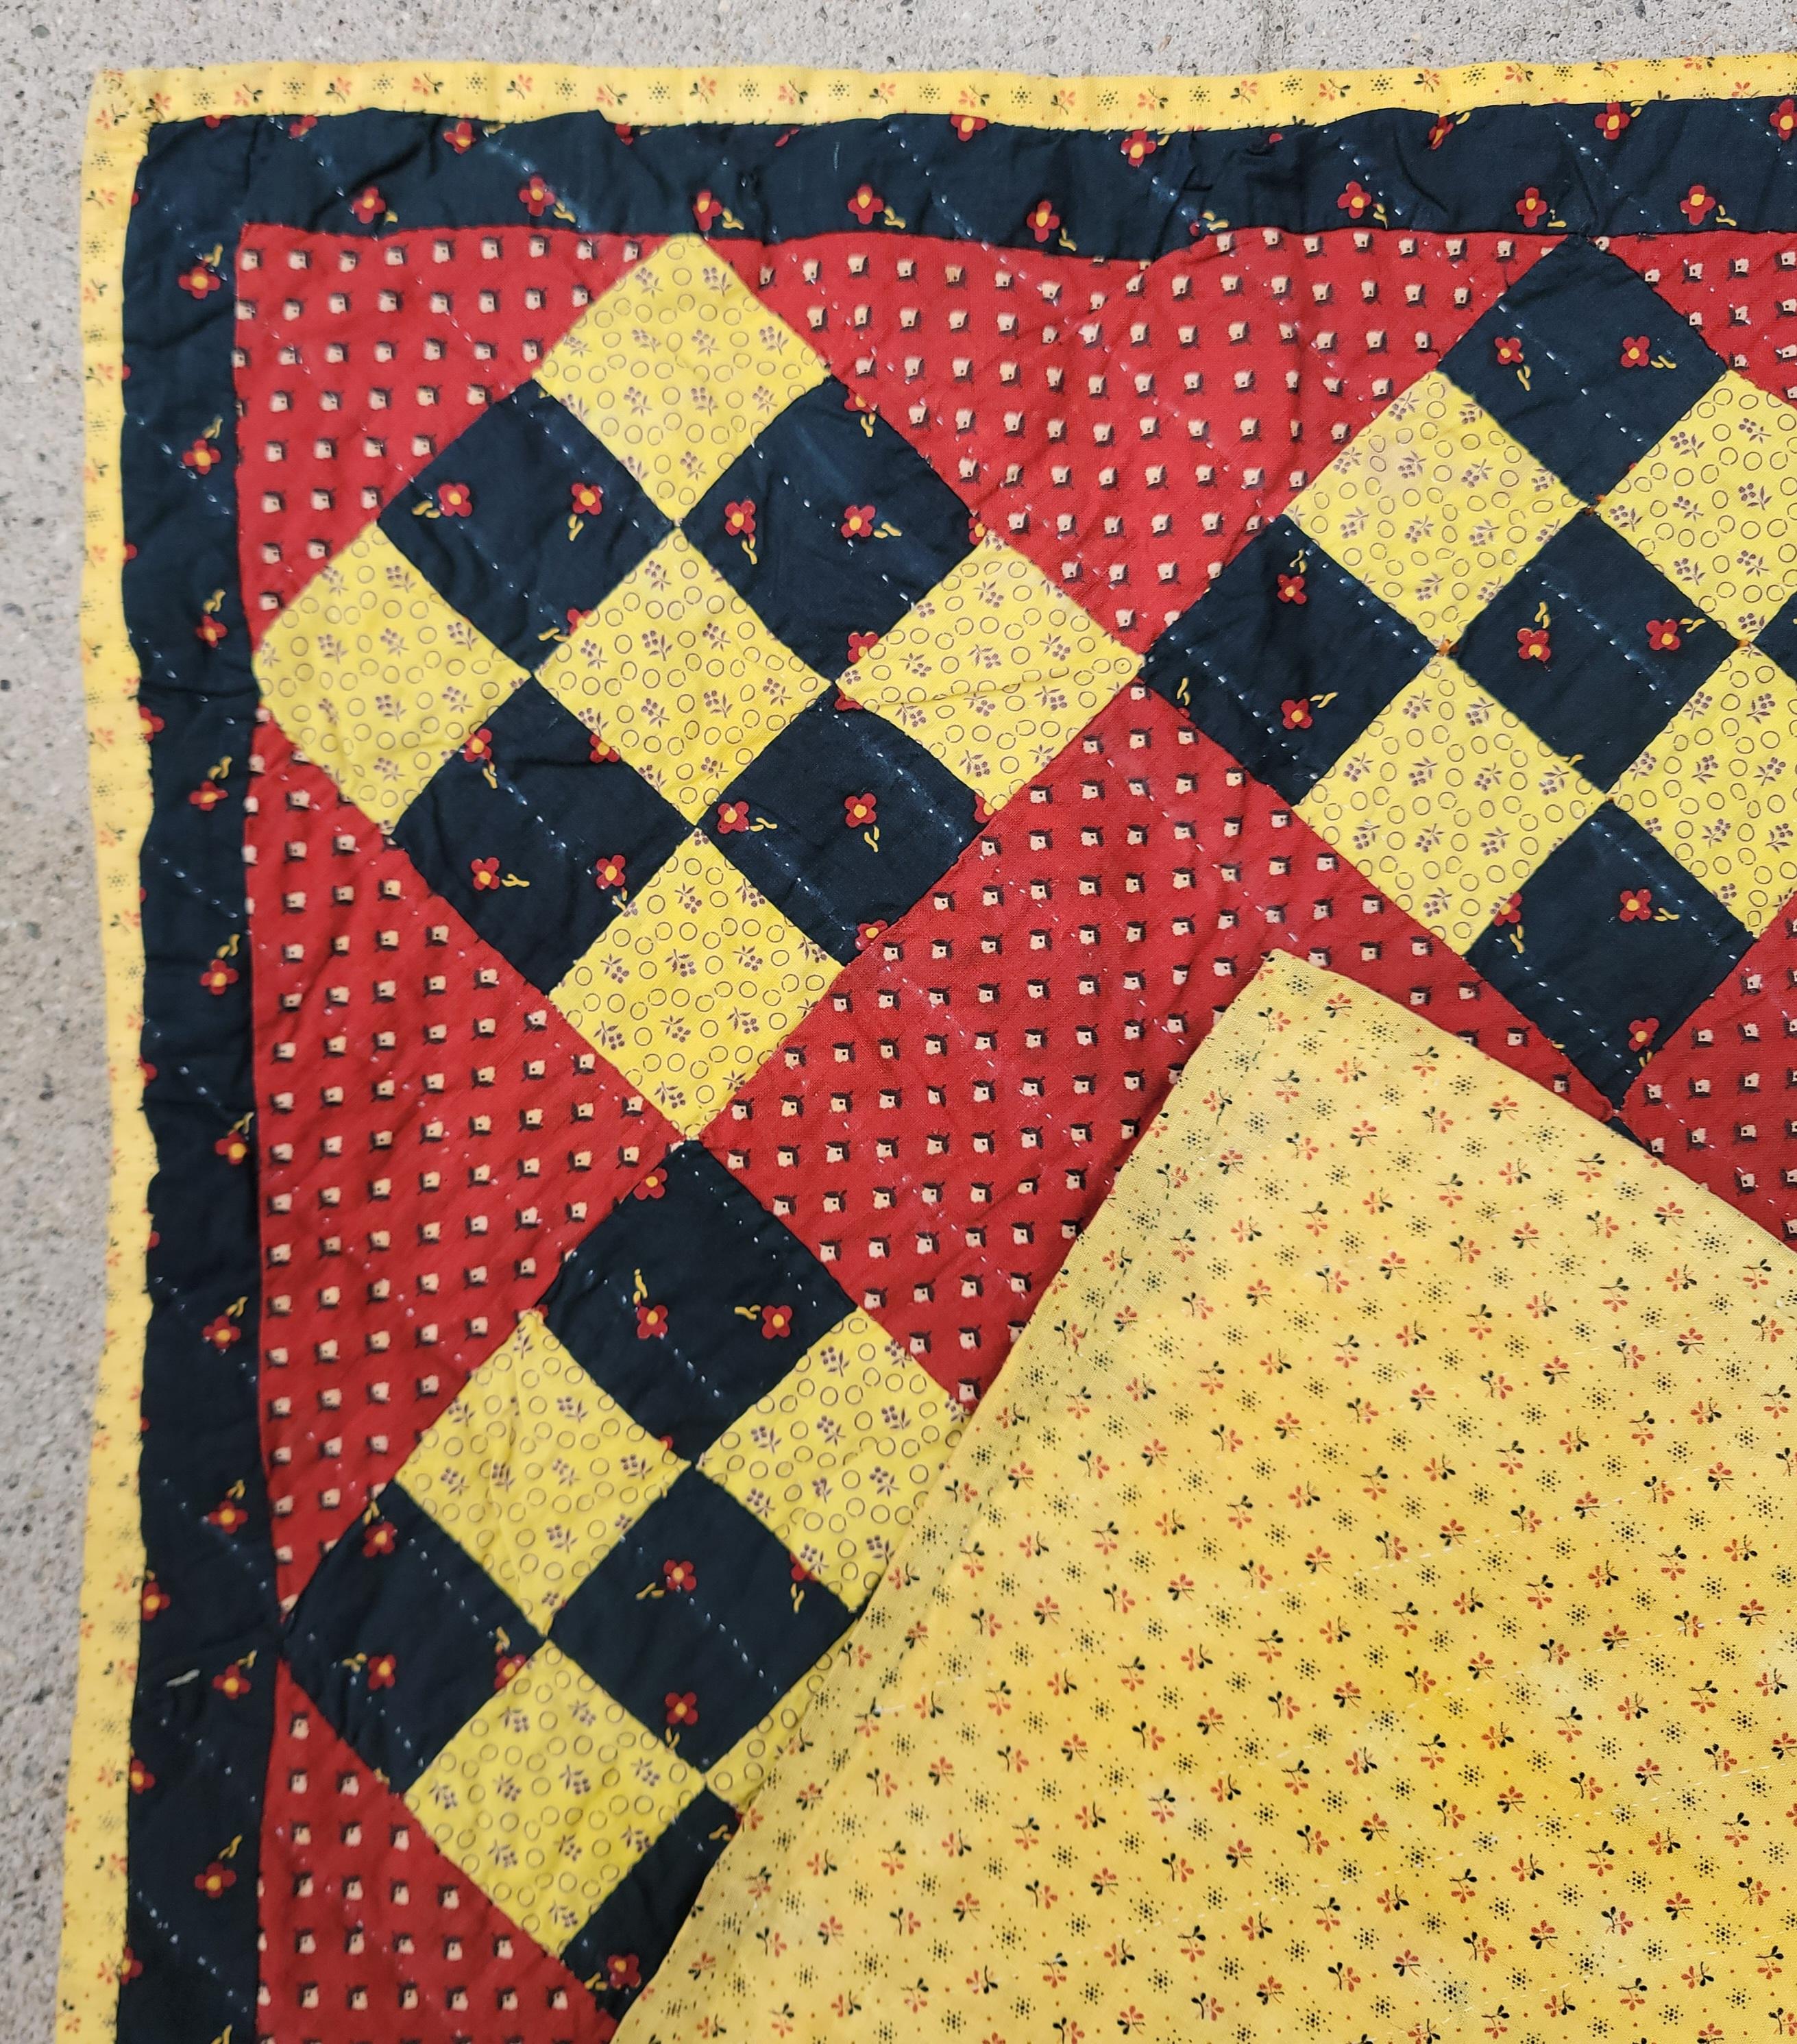 Diese erstaunliche frühe Stoffe Krippe Quilt ist in tadellosem Zustand. Dieser Quilt mit neun Flicken stammt aus Berks County, Pennsylvania.